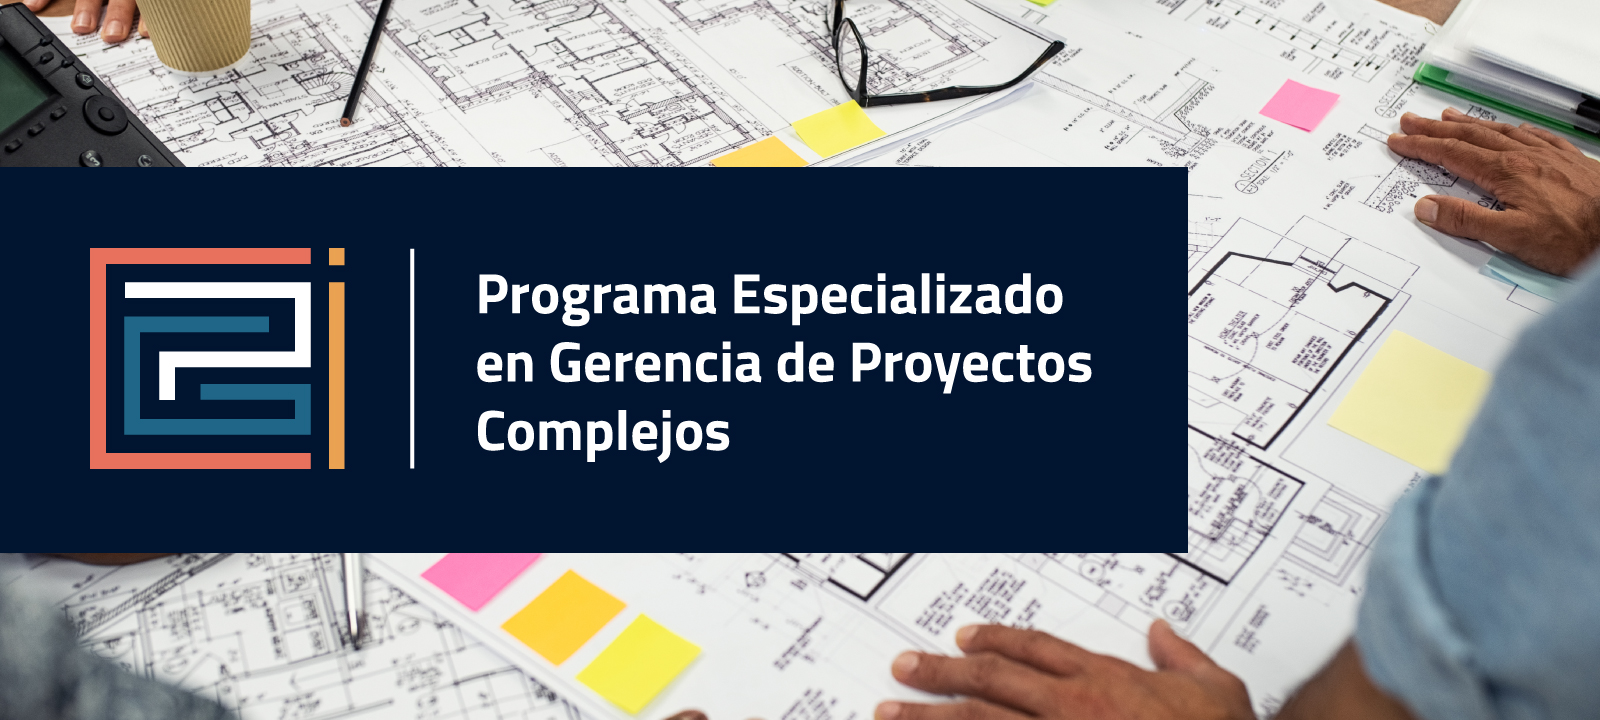 Programa Especializado en Gerencia de Proyectos Complejos en Coursera